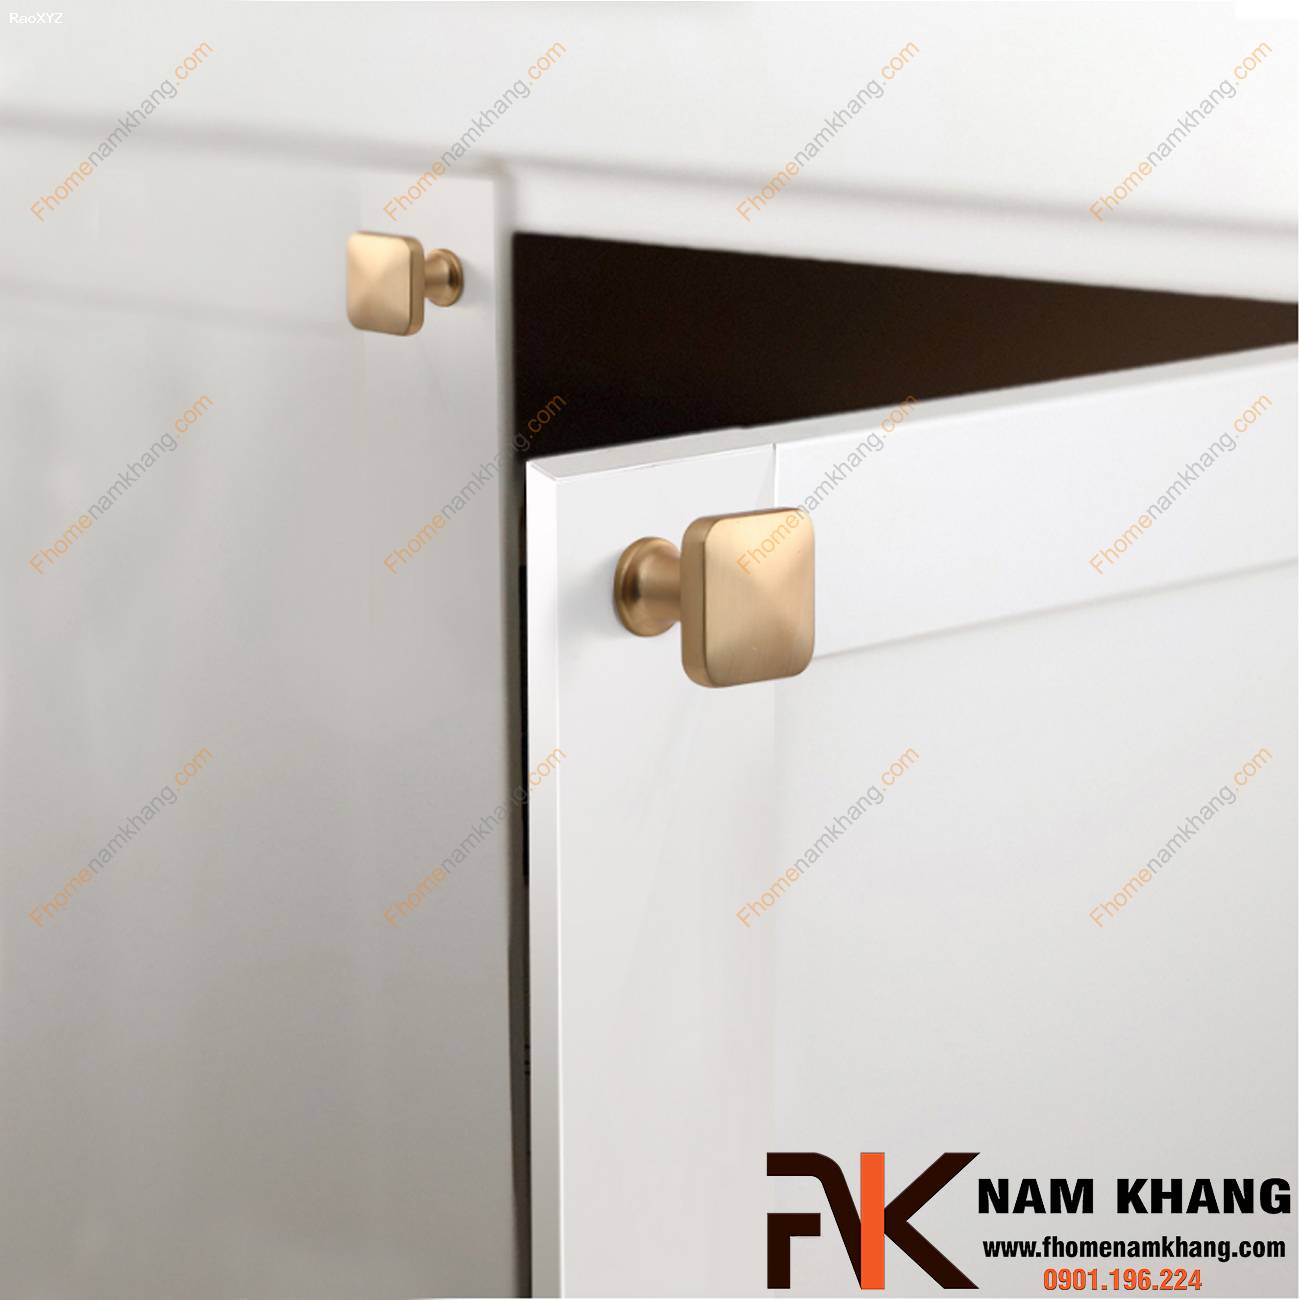 Núm cửa tủ cao cấp đầu vuông NK169 | F-Home NamKhang